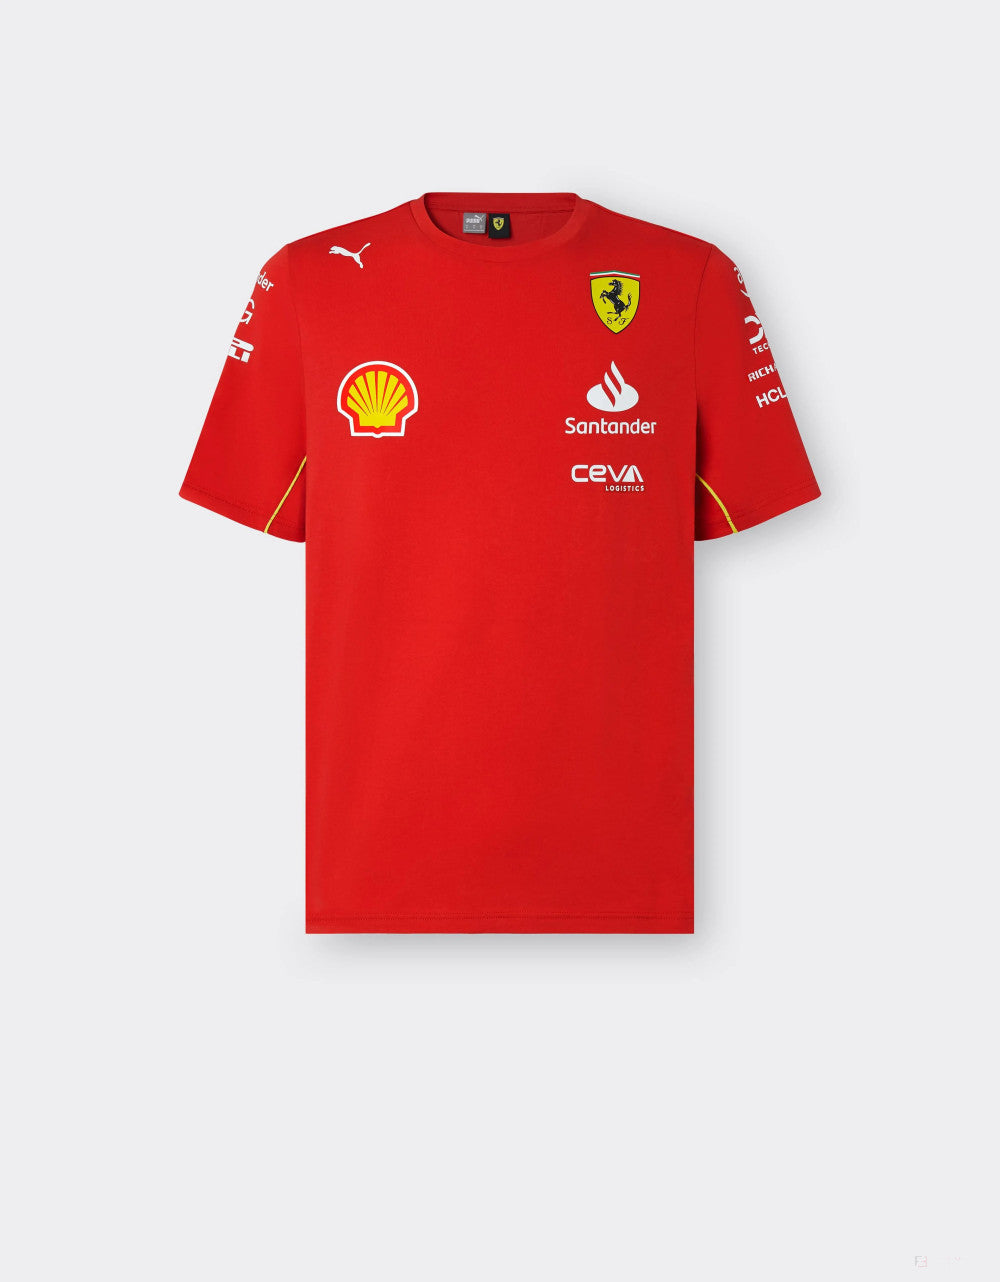 Ferrari tričko, Puma, tímové, červená, 2024